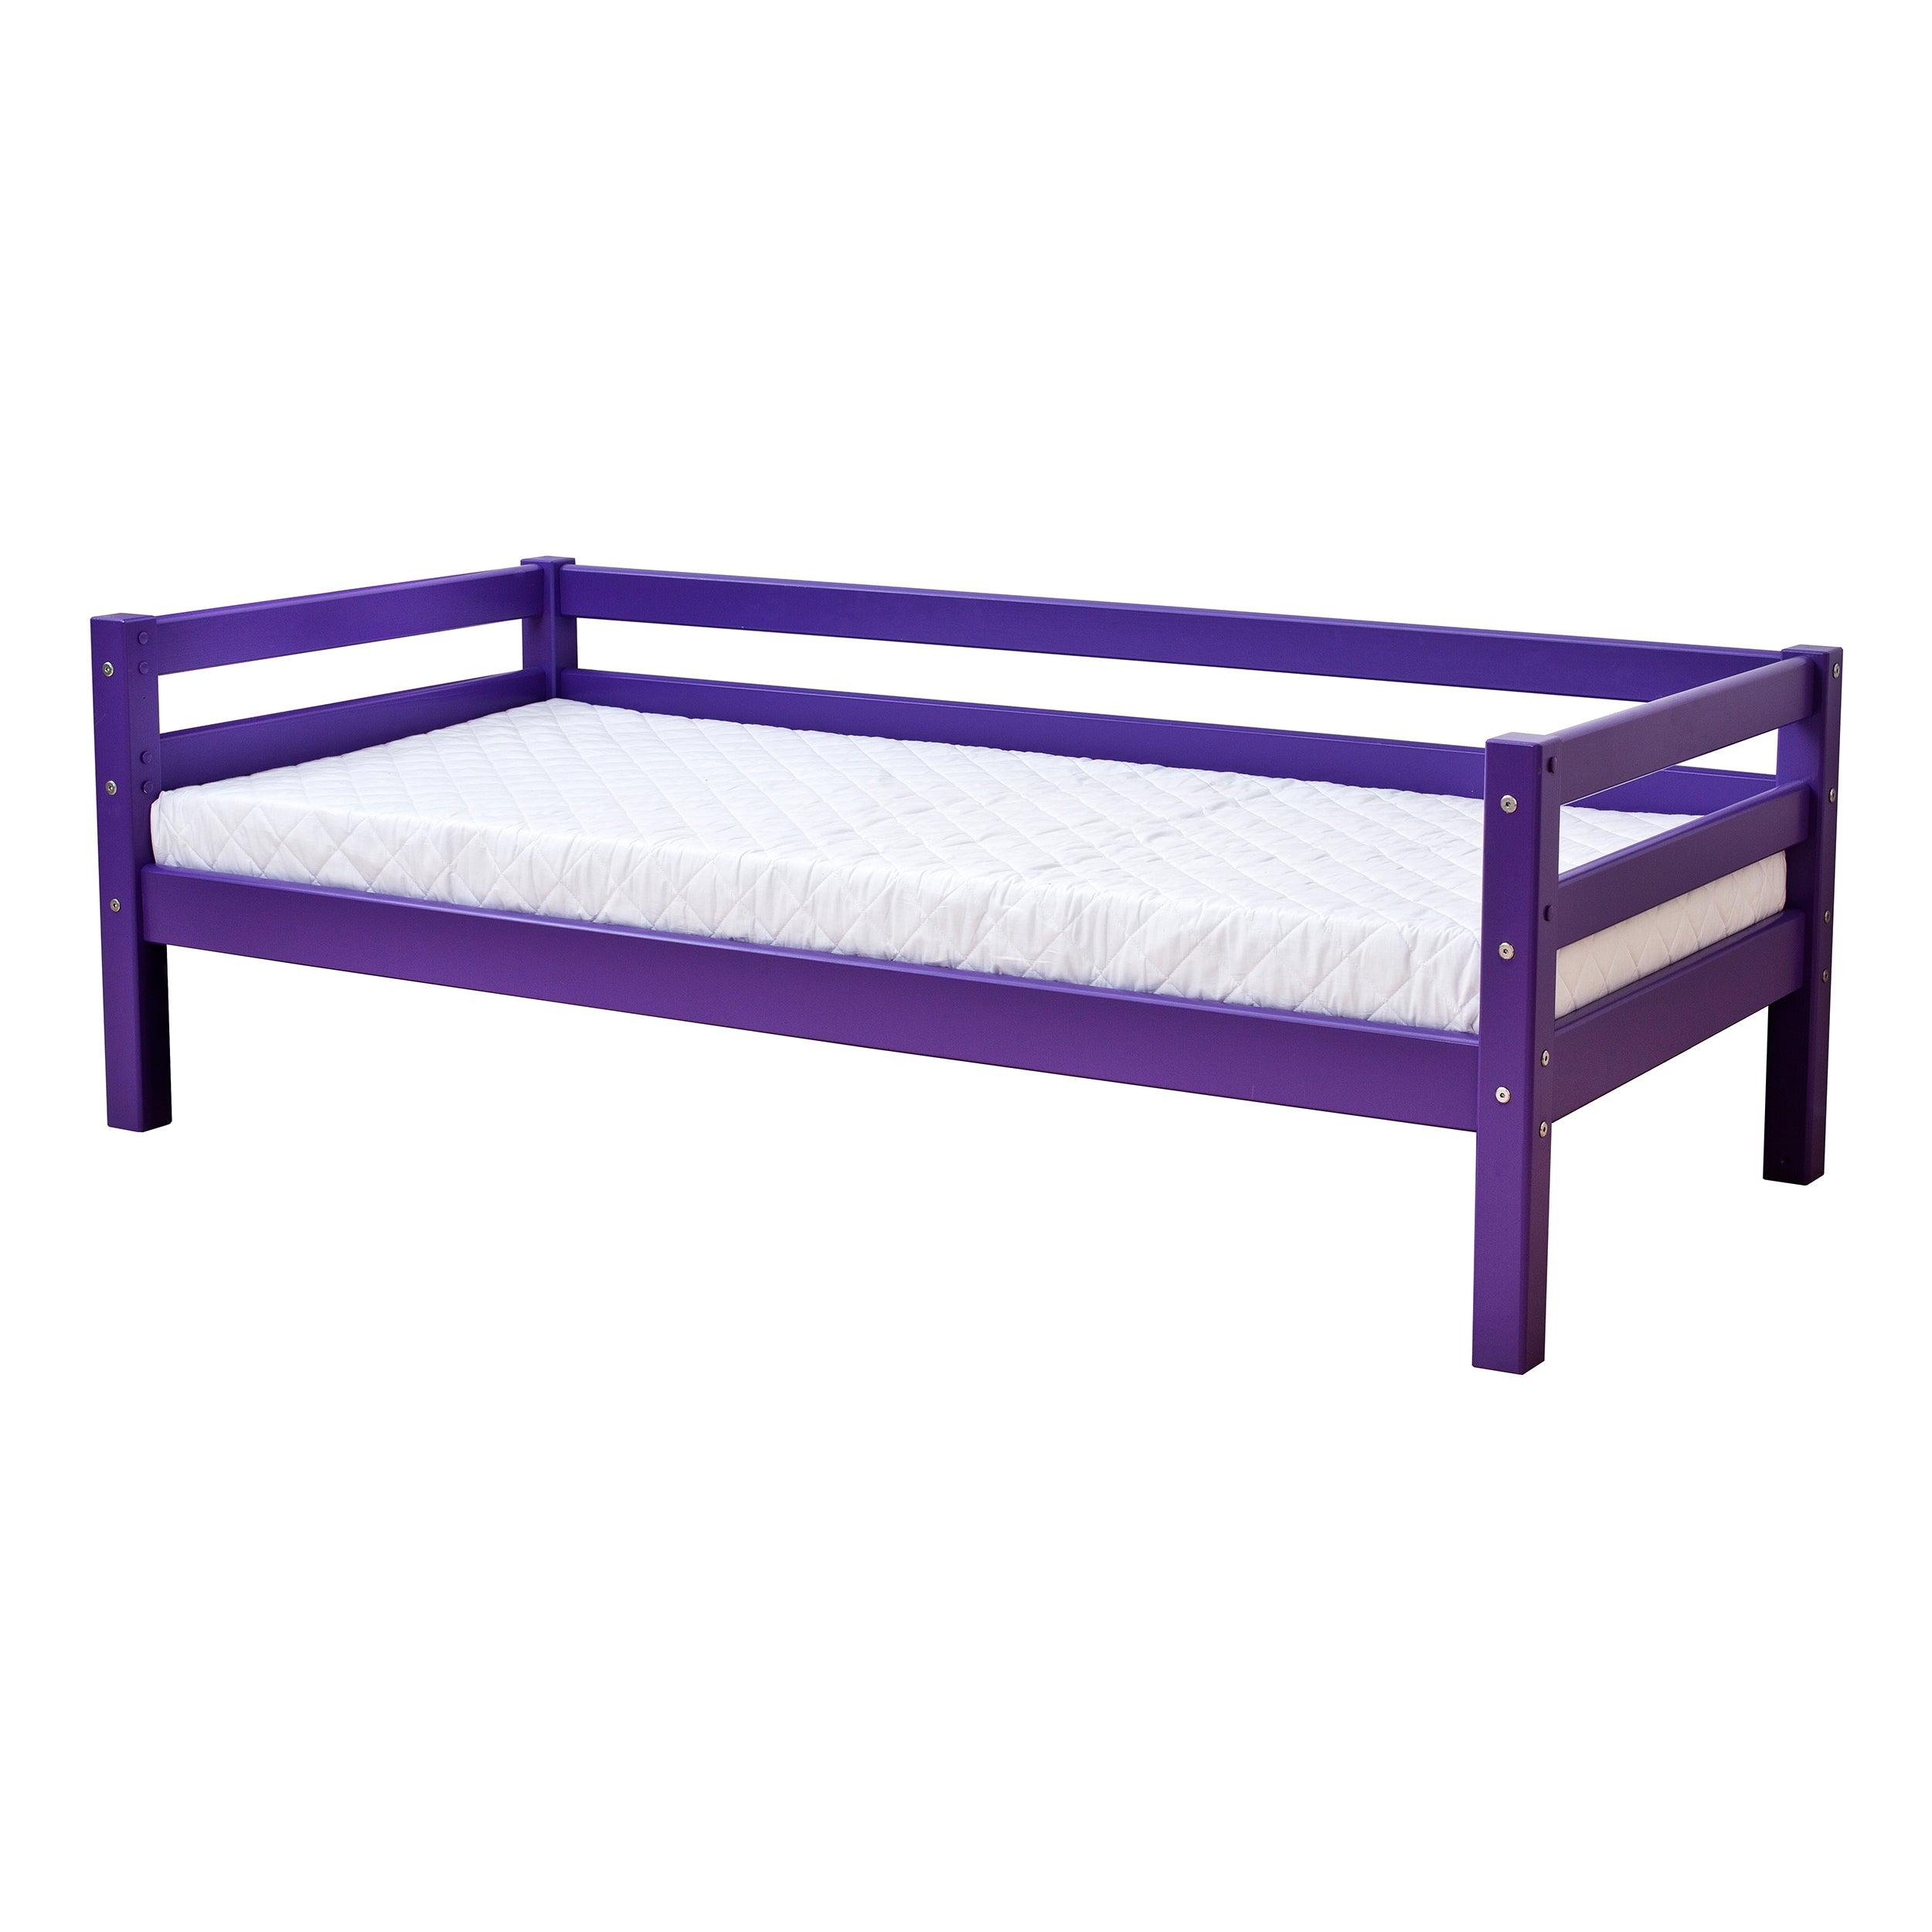 Outlet: ECO Dream cama junior, violeta